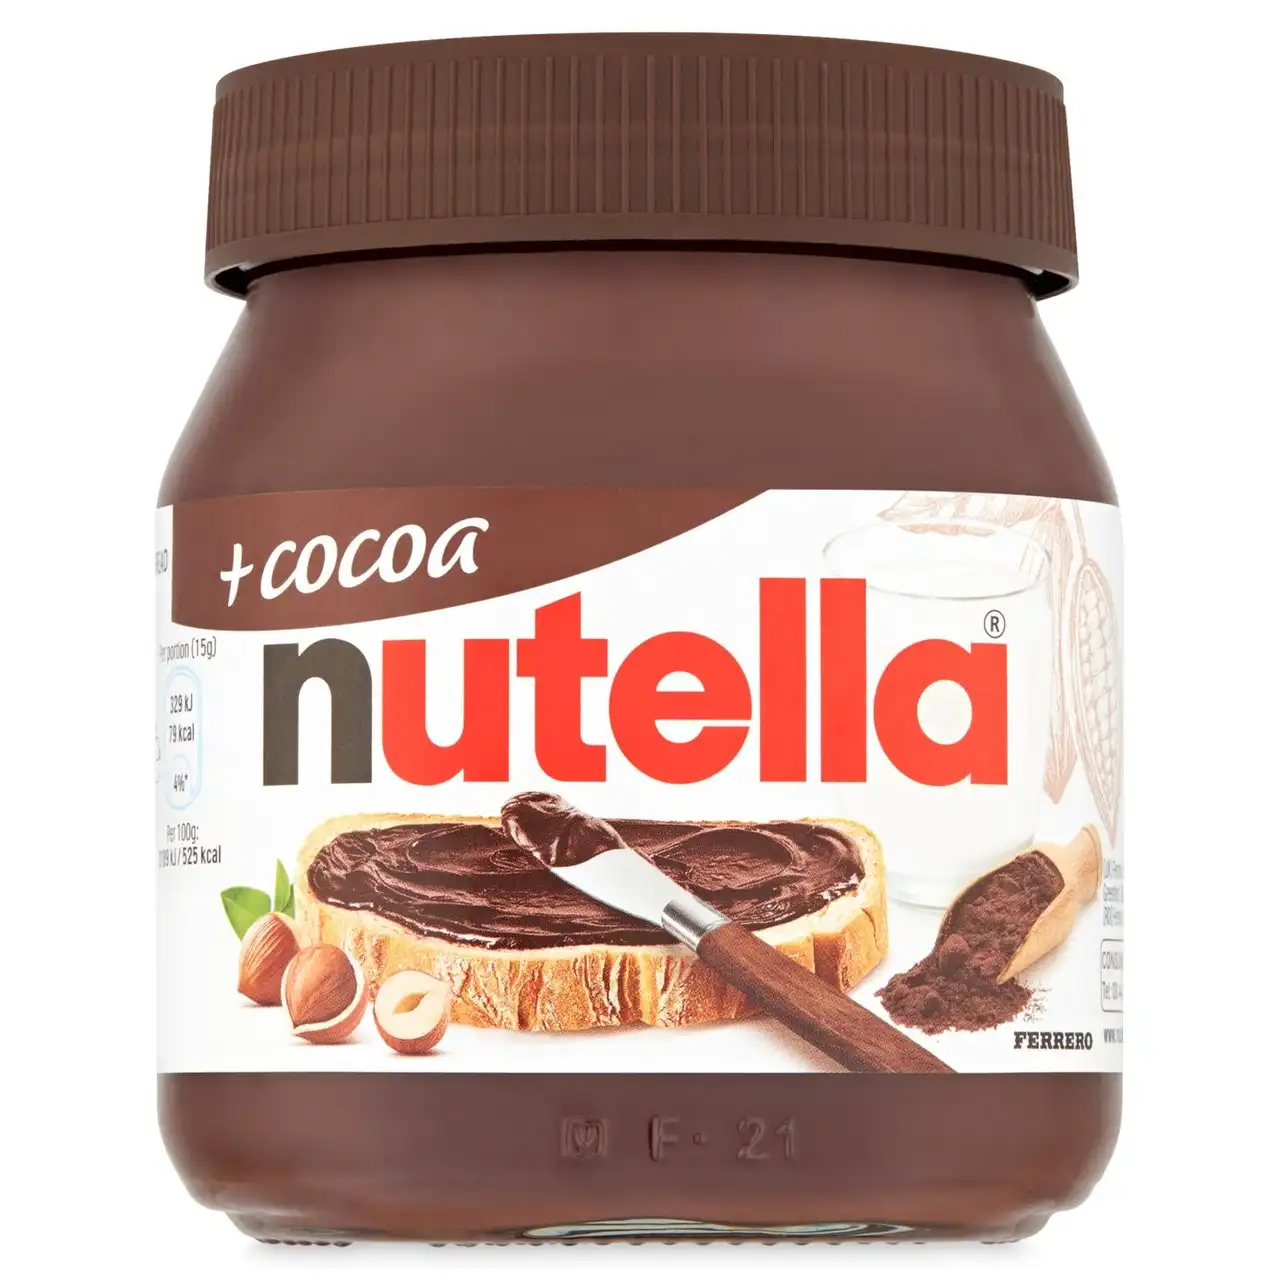 Chocolate de avellanas Nutella, 1kg (todos los tamaños disponibles), disponible